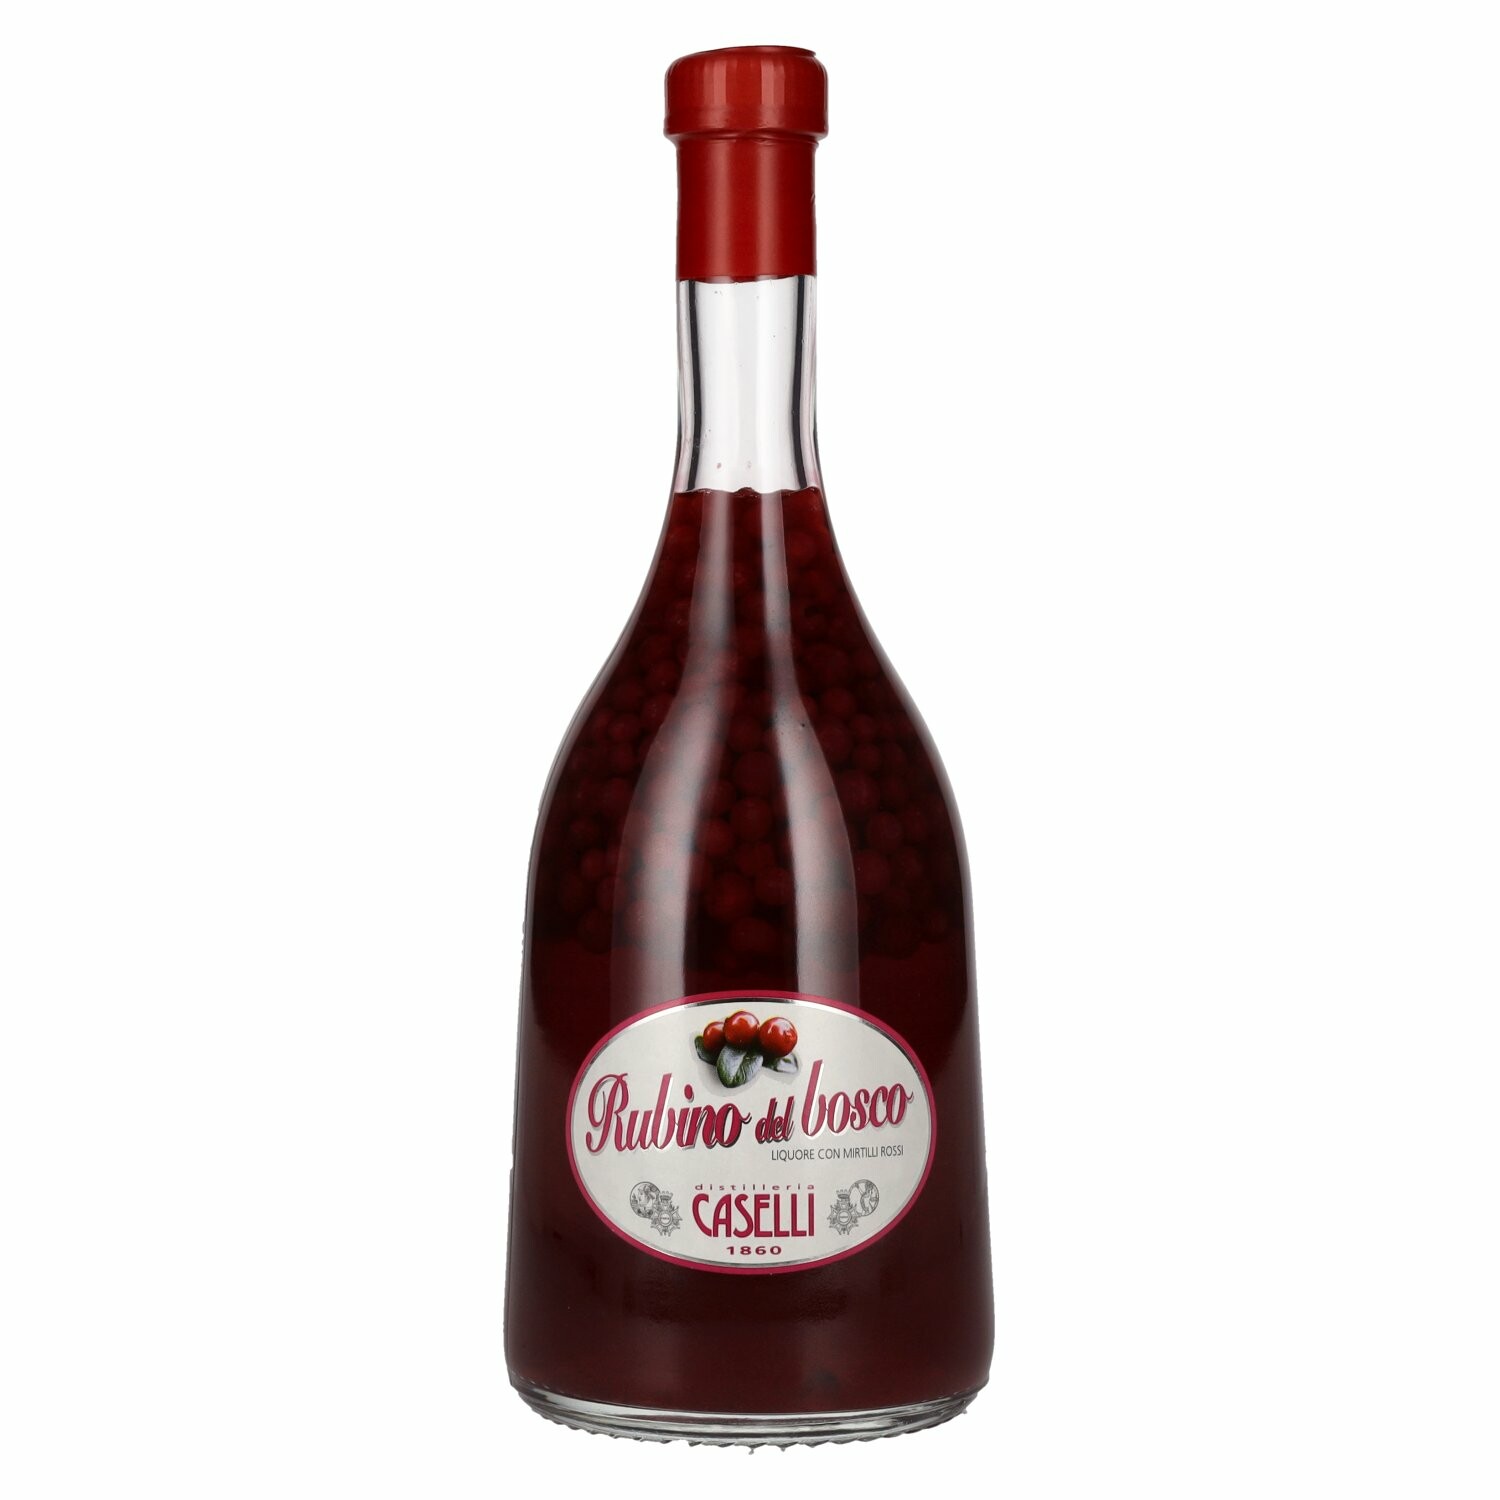 Caselli Rubino del bosco Liquore con Mirtilli rossi di bosco 25% Vol. 0,7l